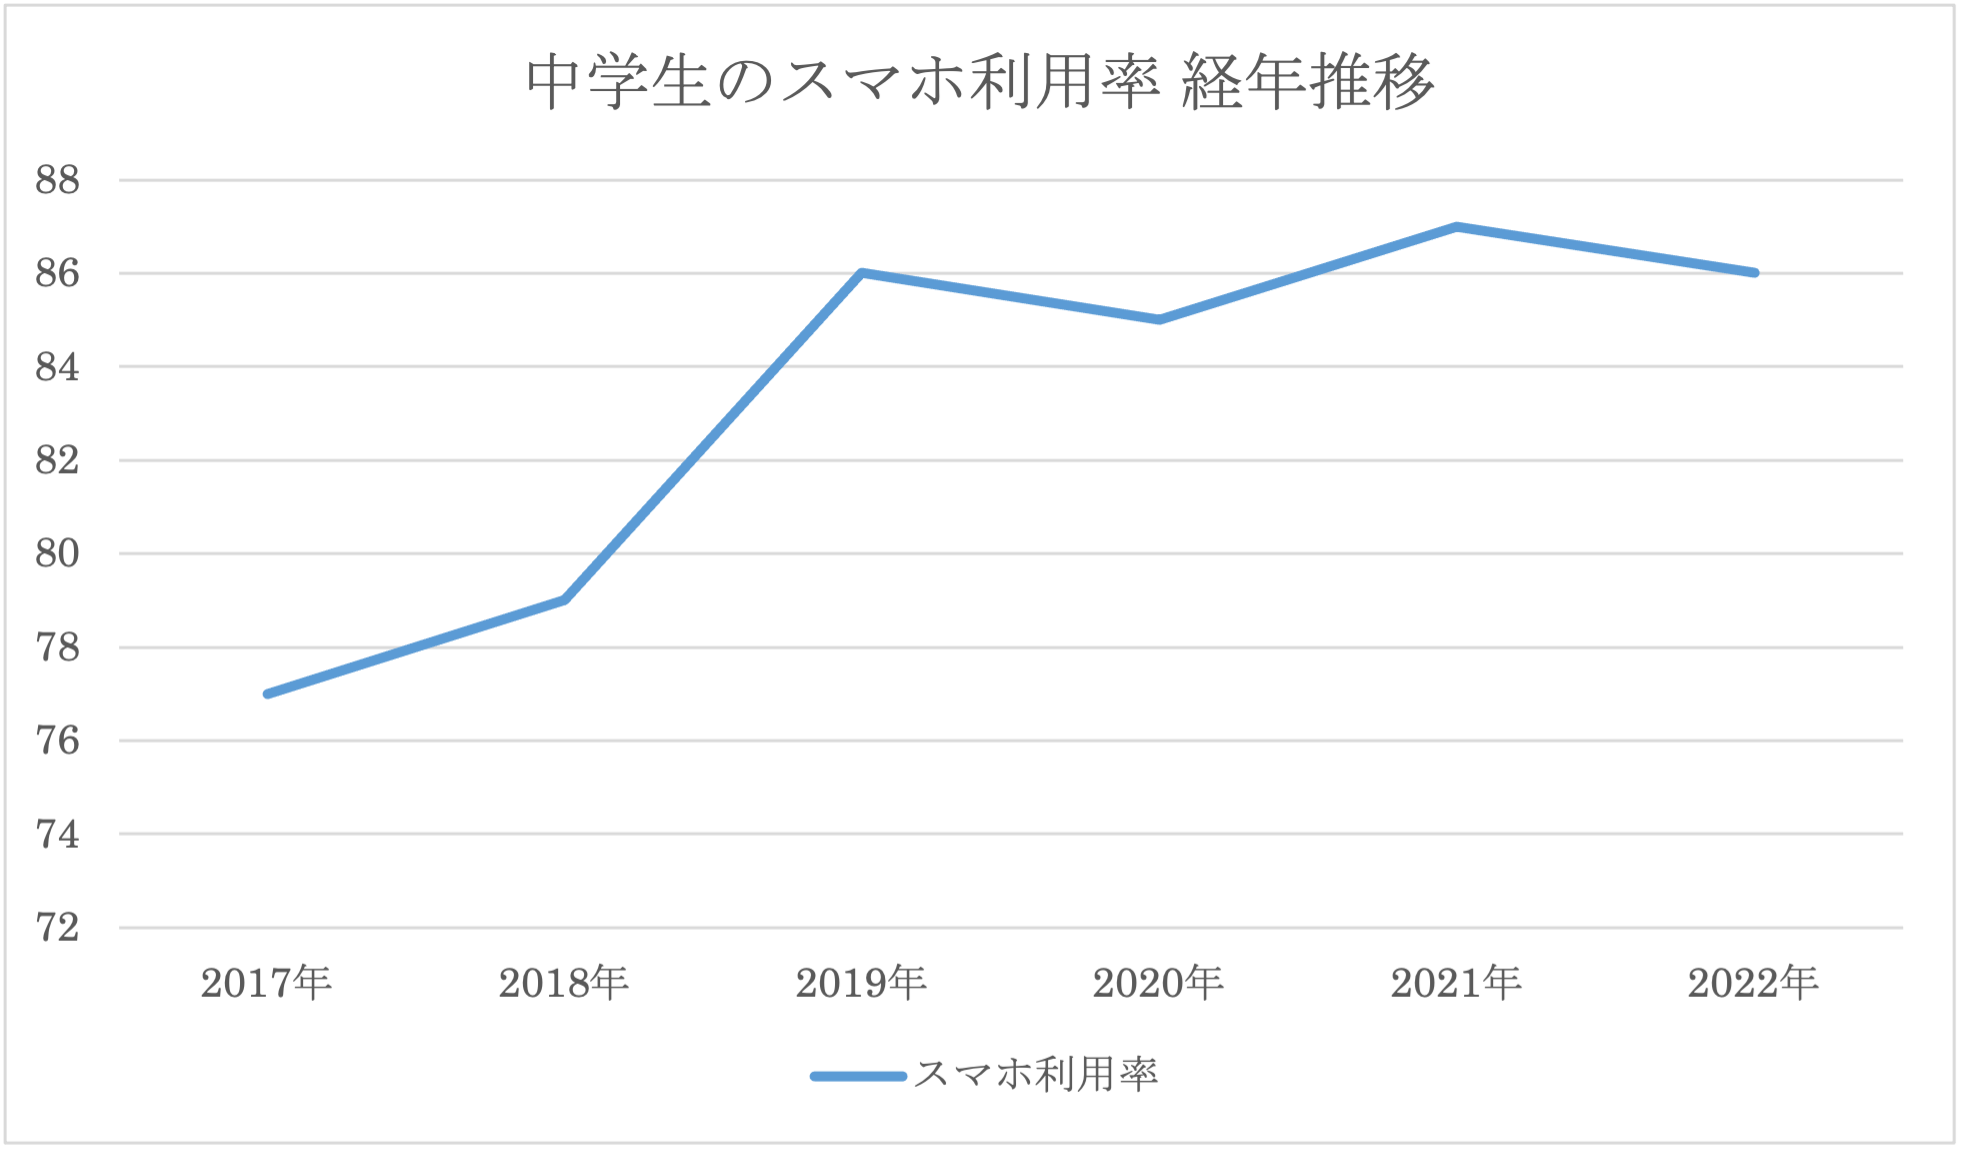 中学生のスマホ利用率経年推移のグラフ